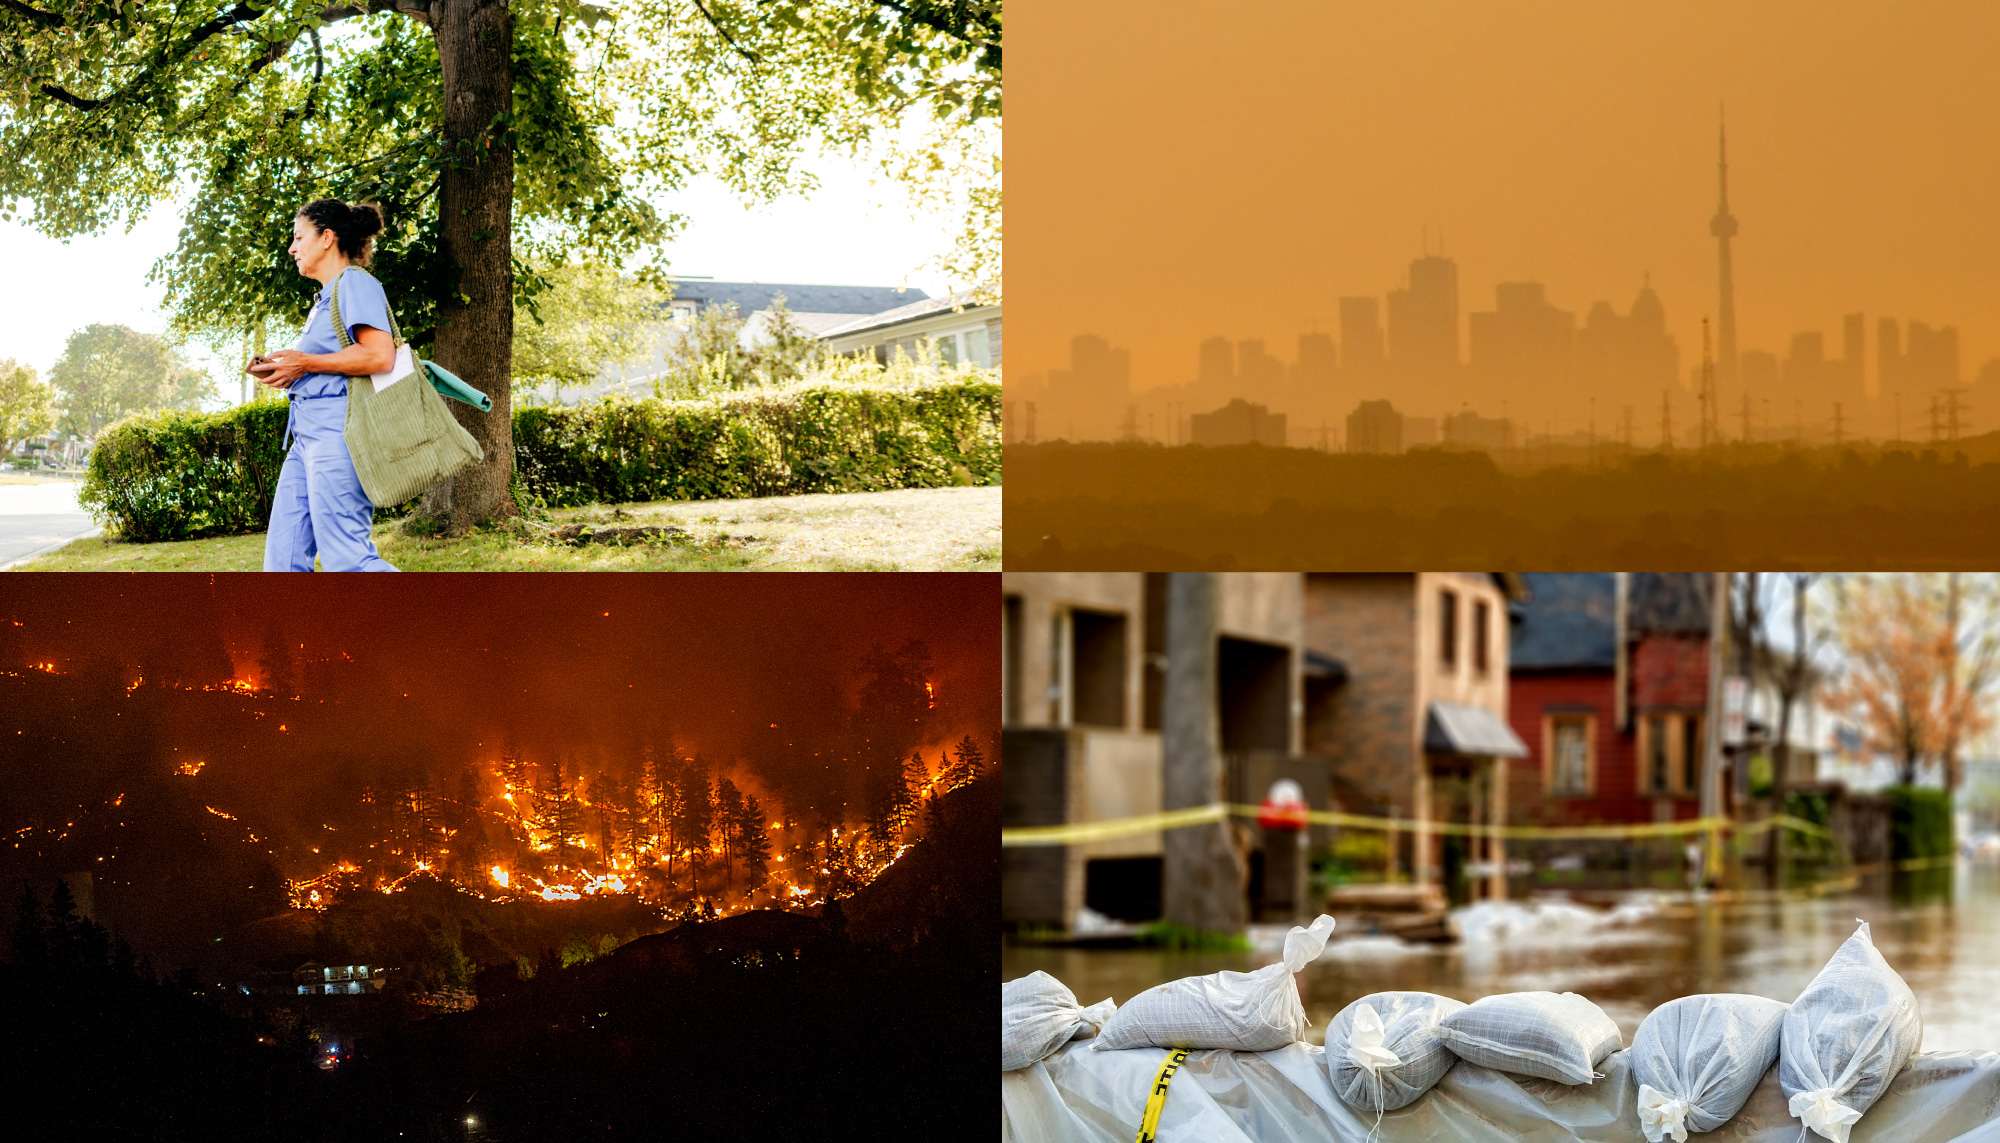 collage d'images : une femme marchant, du smog sur un horizon, des incendies de forêt et des sacs de sable pour les inondations